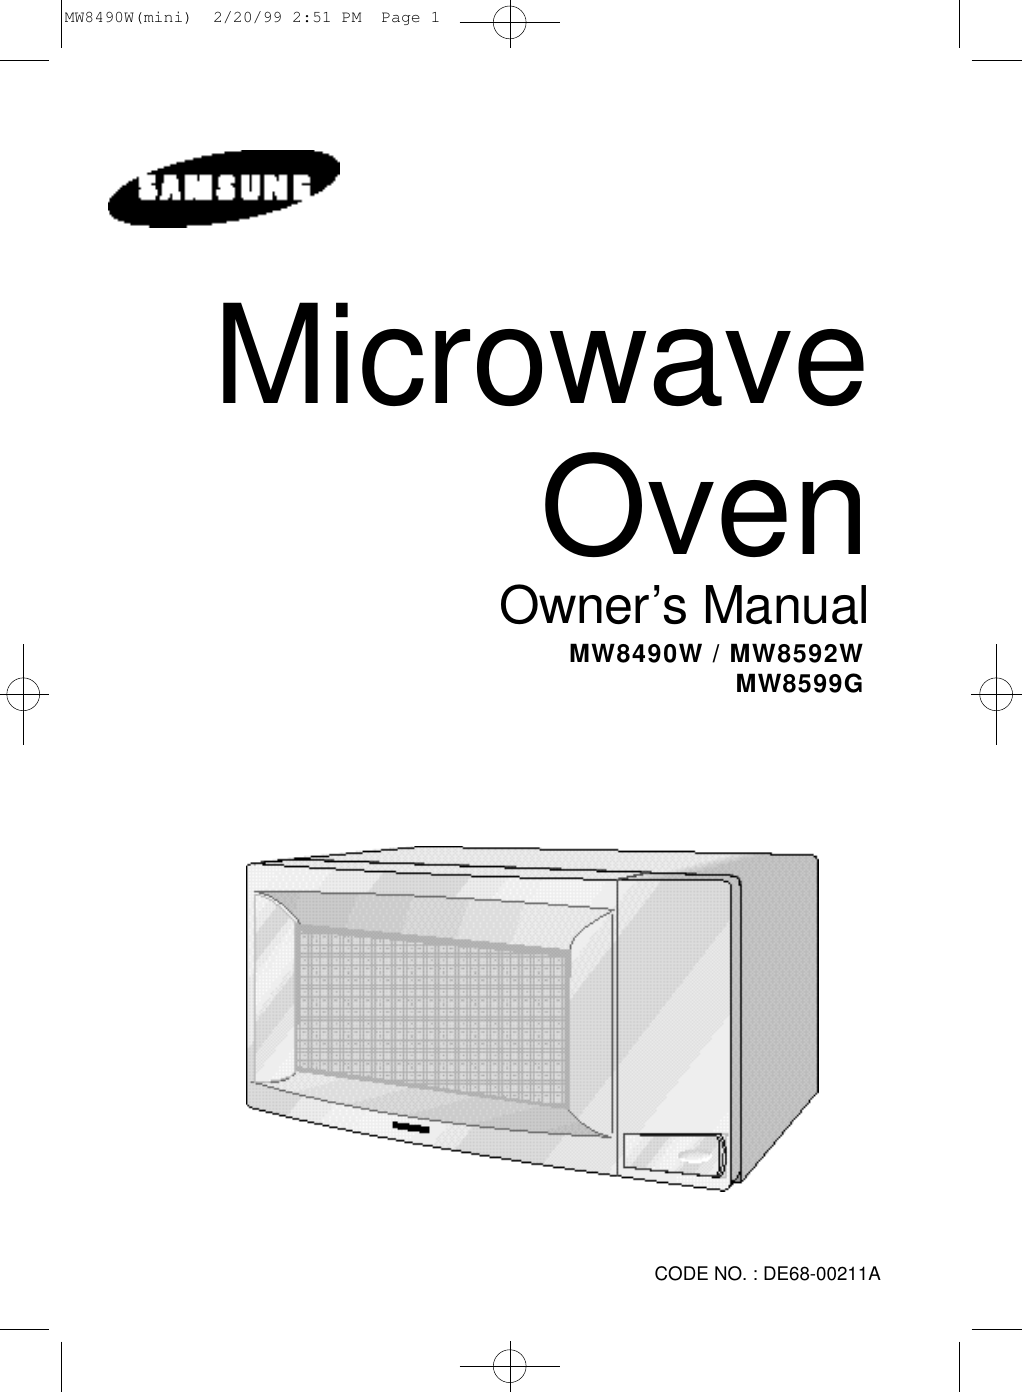 Microwave OvenO w n e r’s ManualMW8490W / MW8592WMW8599G CODE NO. : DE68-00211AMW8490W(mini)  2/20/99 2:51 PM  Page 1